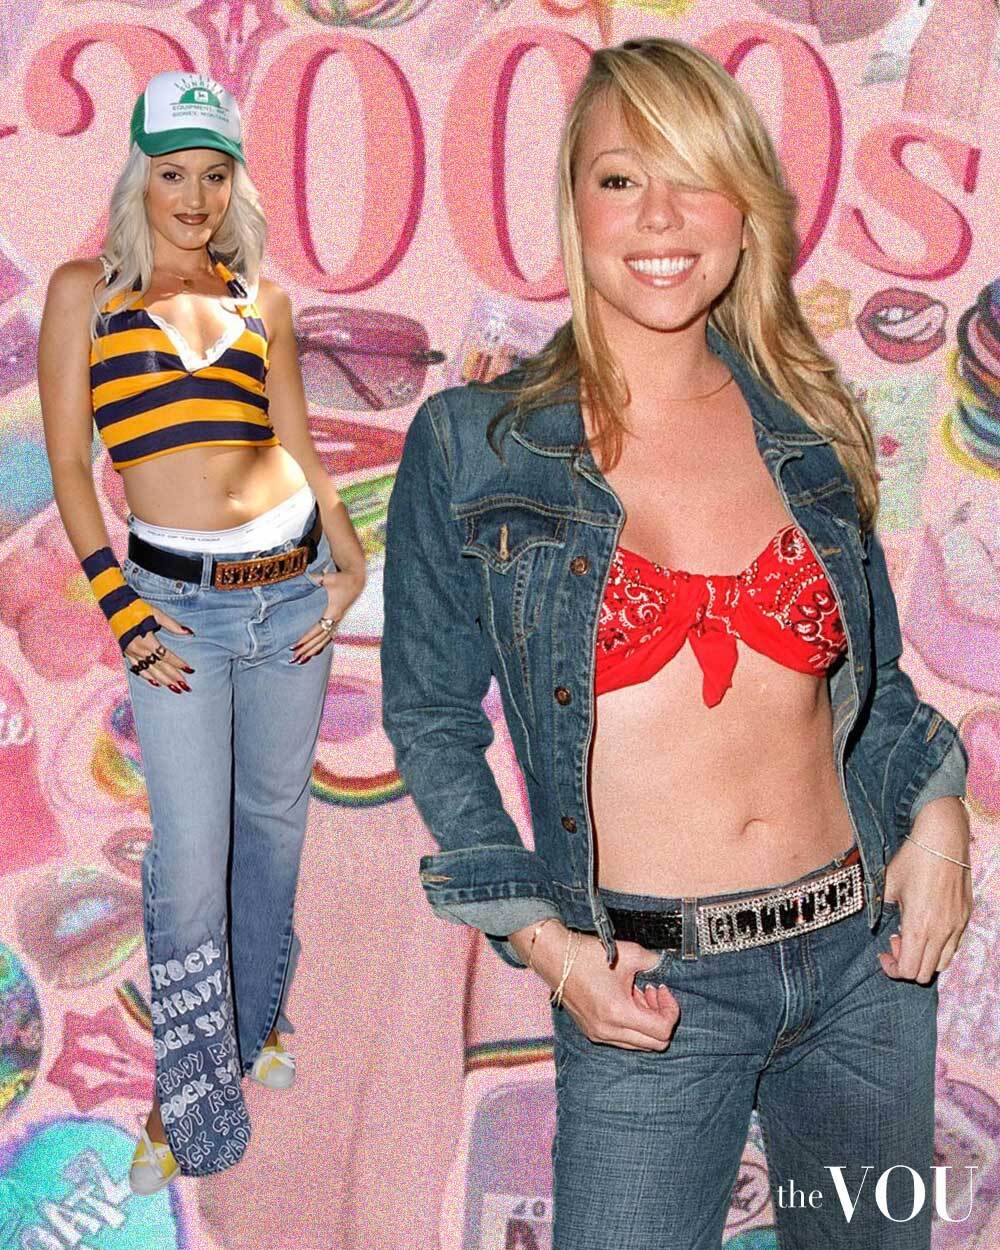 Gwen Stefani & Mariah Carey wearing name belts in 2000s fashion